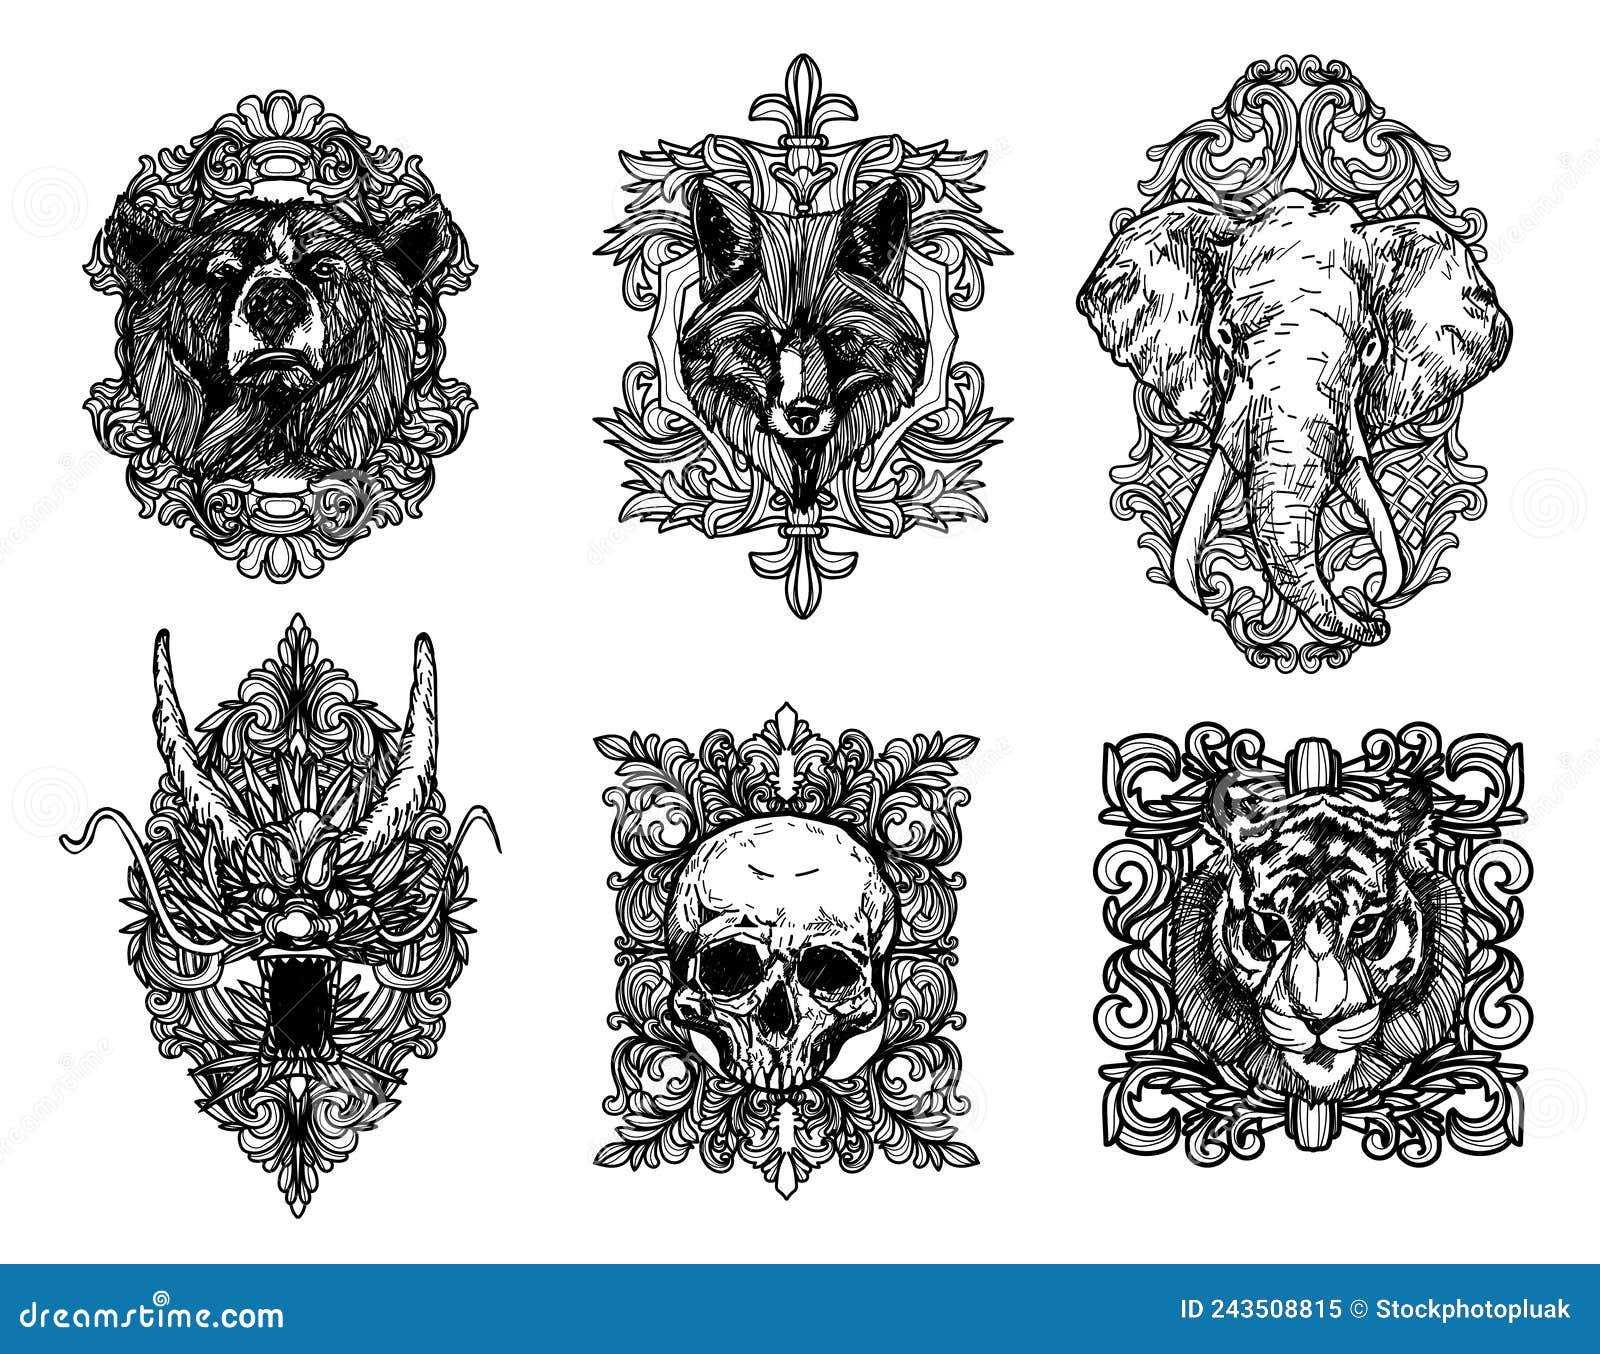 design-tattoo-skull-tiger-snake-tattoo-abyss - Tattoo Abyss Montreal